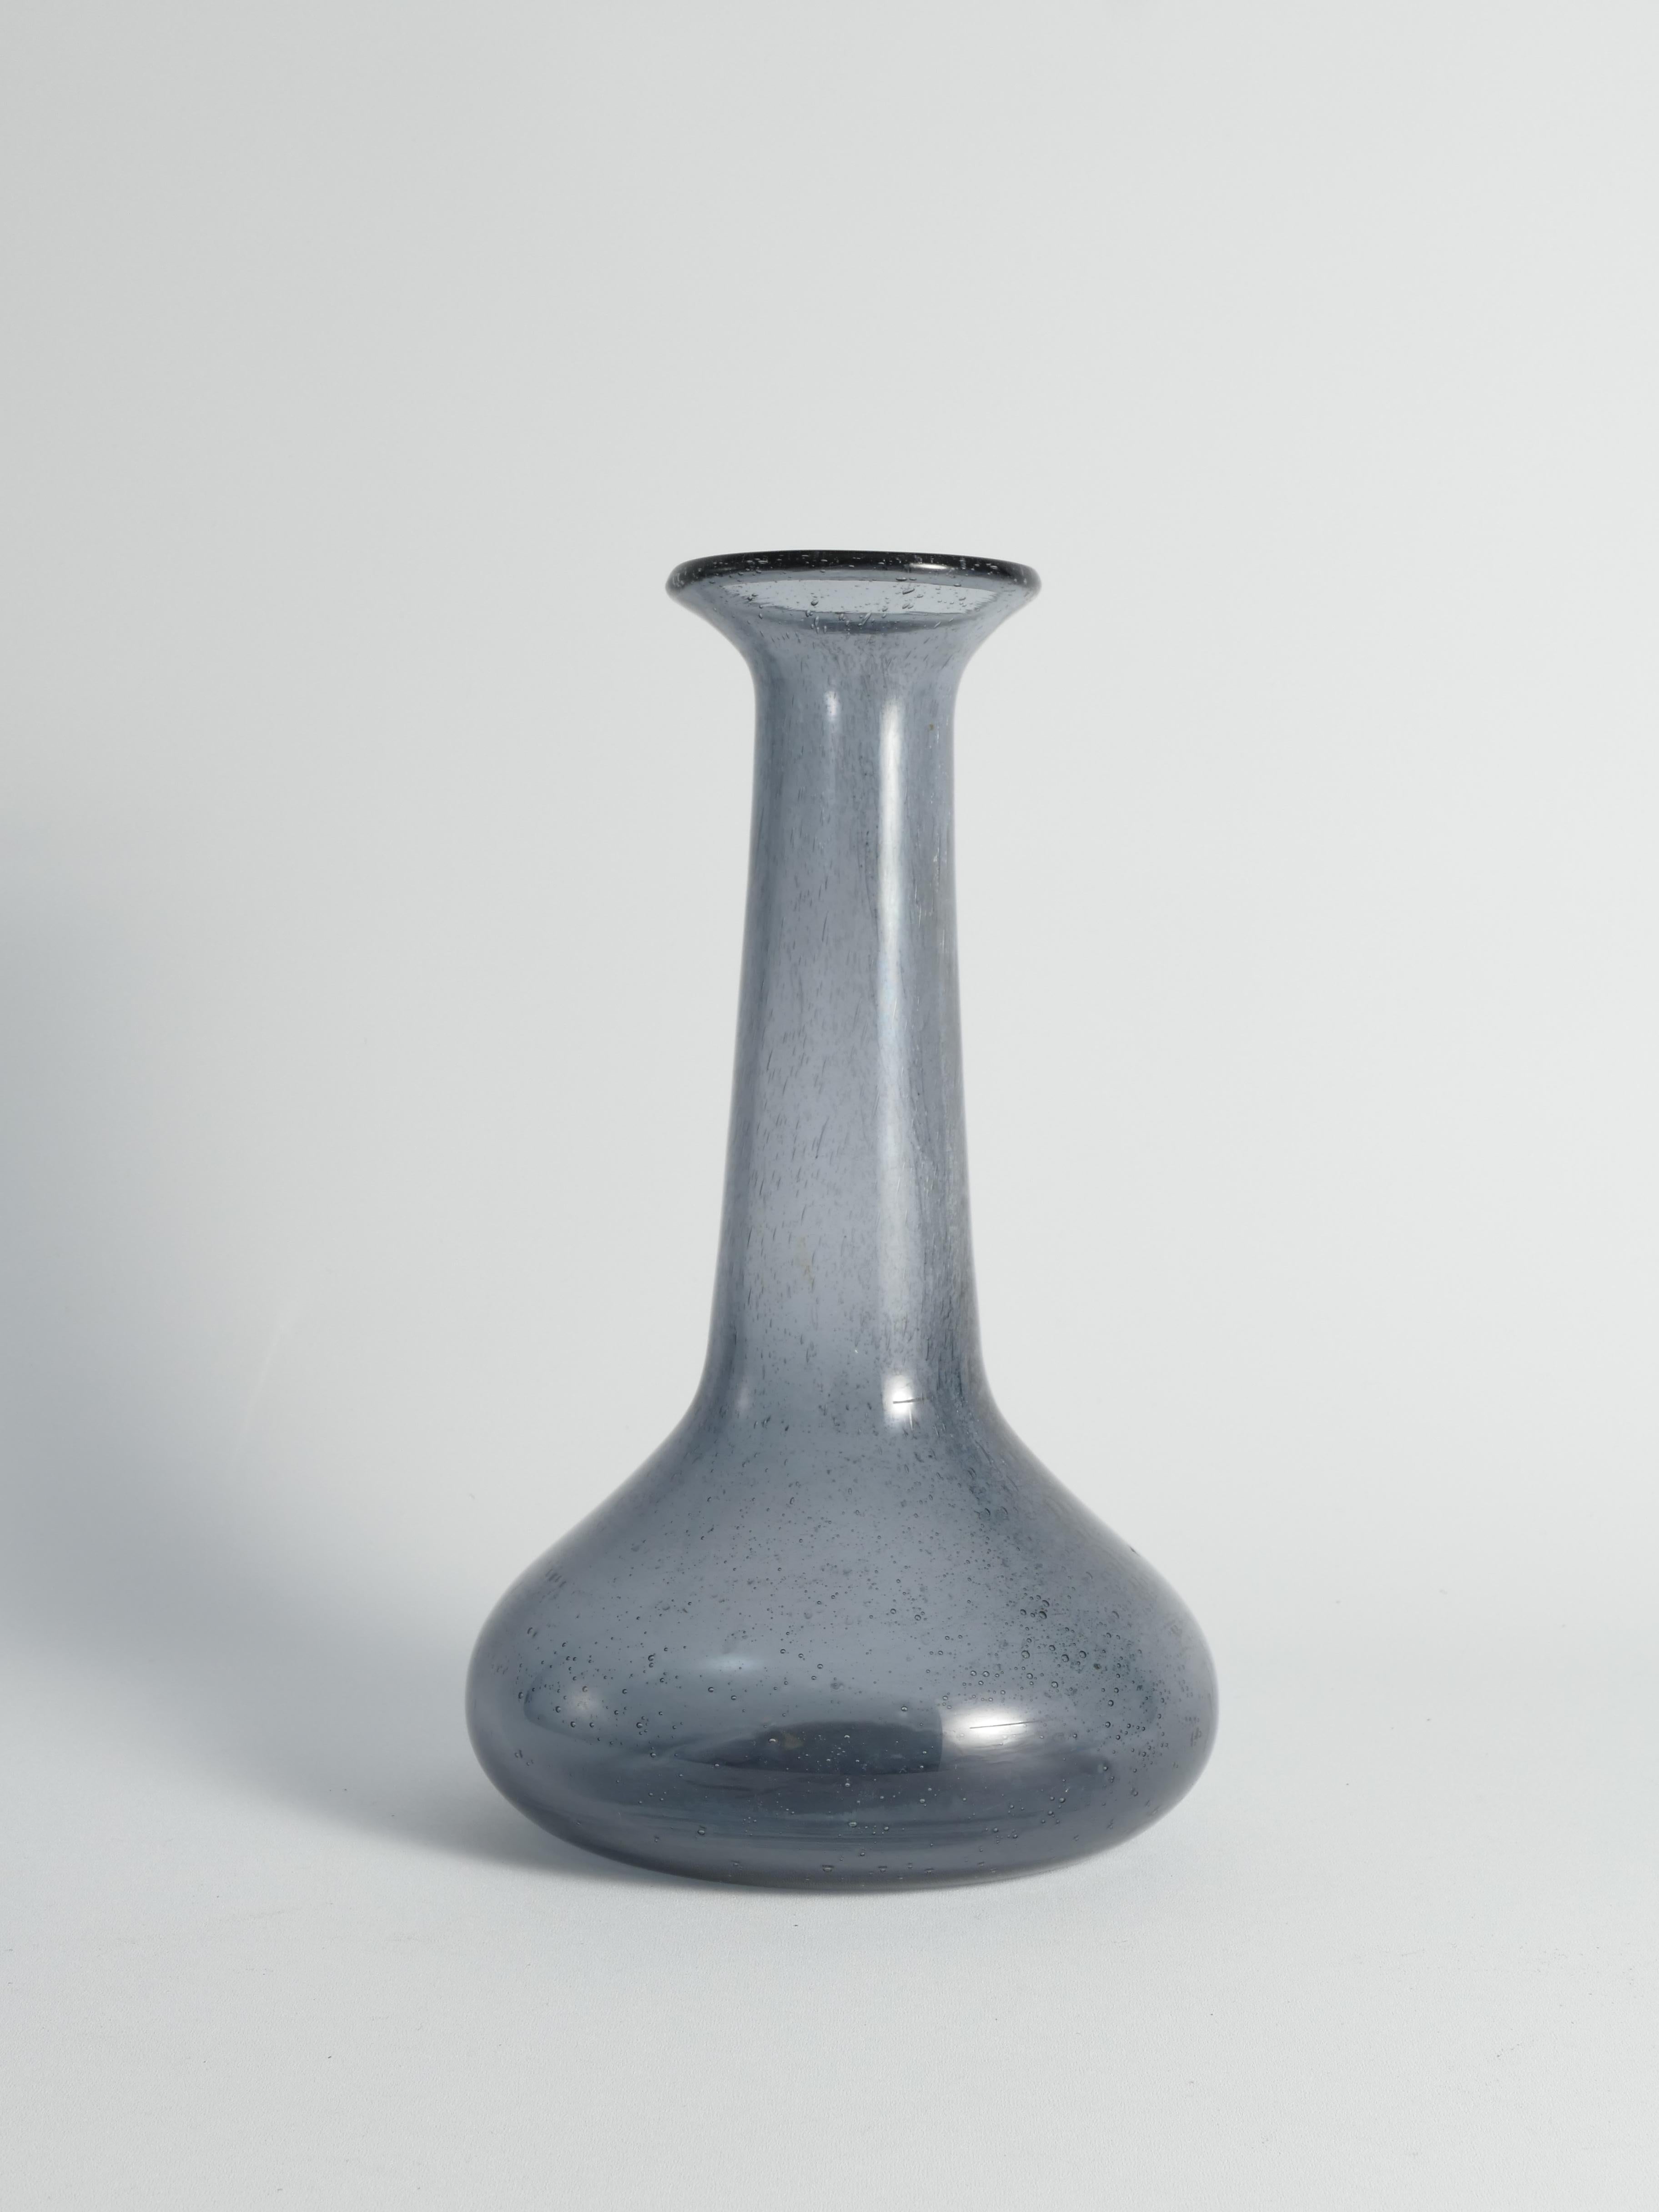 Plongez dans le charme discret de ce vase en verre bleu, créé par les mains expertes de l'artiste Erik Höglund pour Boda glassworks.  Le verre bleu scintillant, avec sa danse ludique de petites bulles, crée une ambiance de beauté délicate.


Ce vase